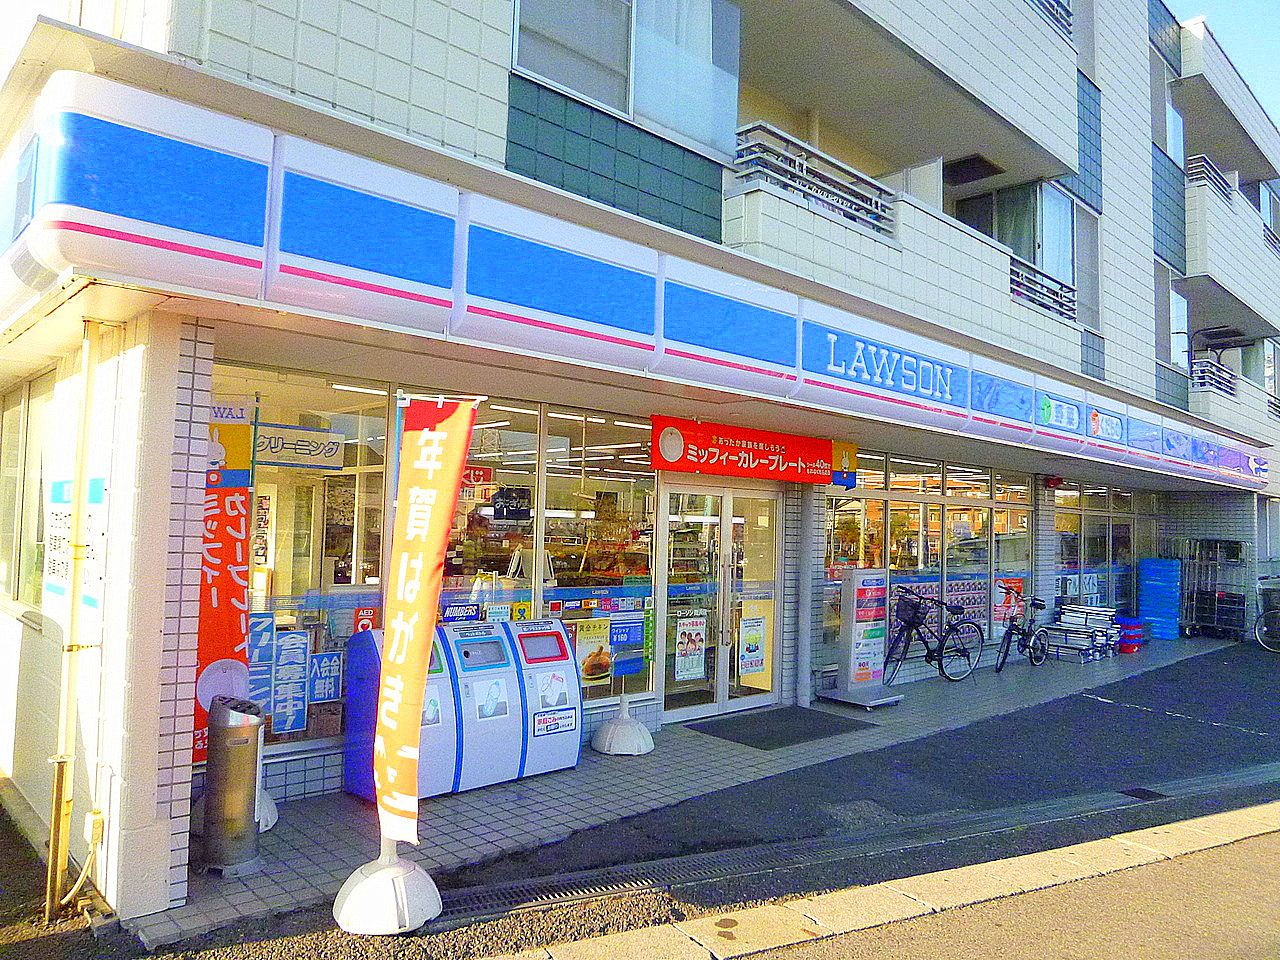 Convenience store. 392m until Lawson Urayasu Fujimi store (convenience store)